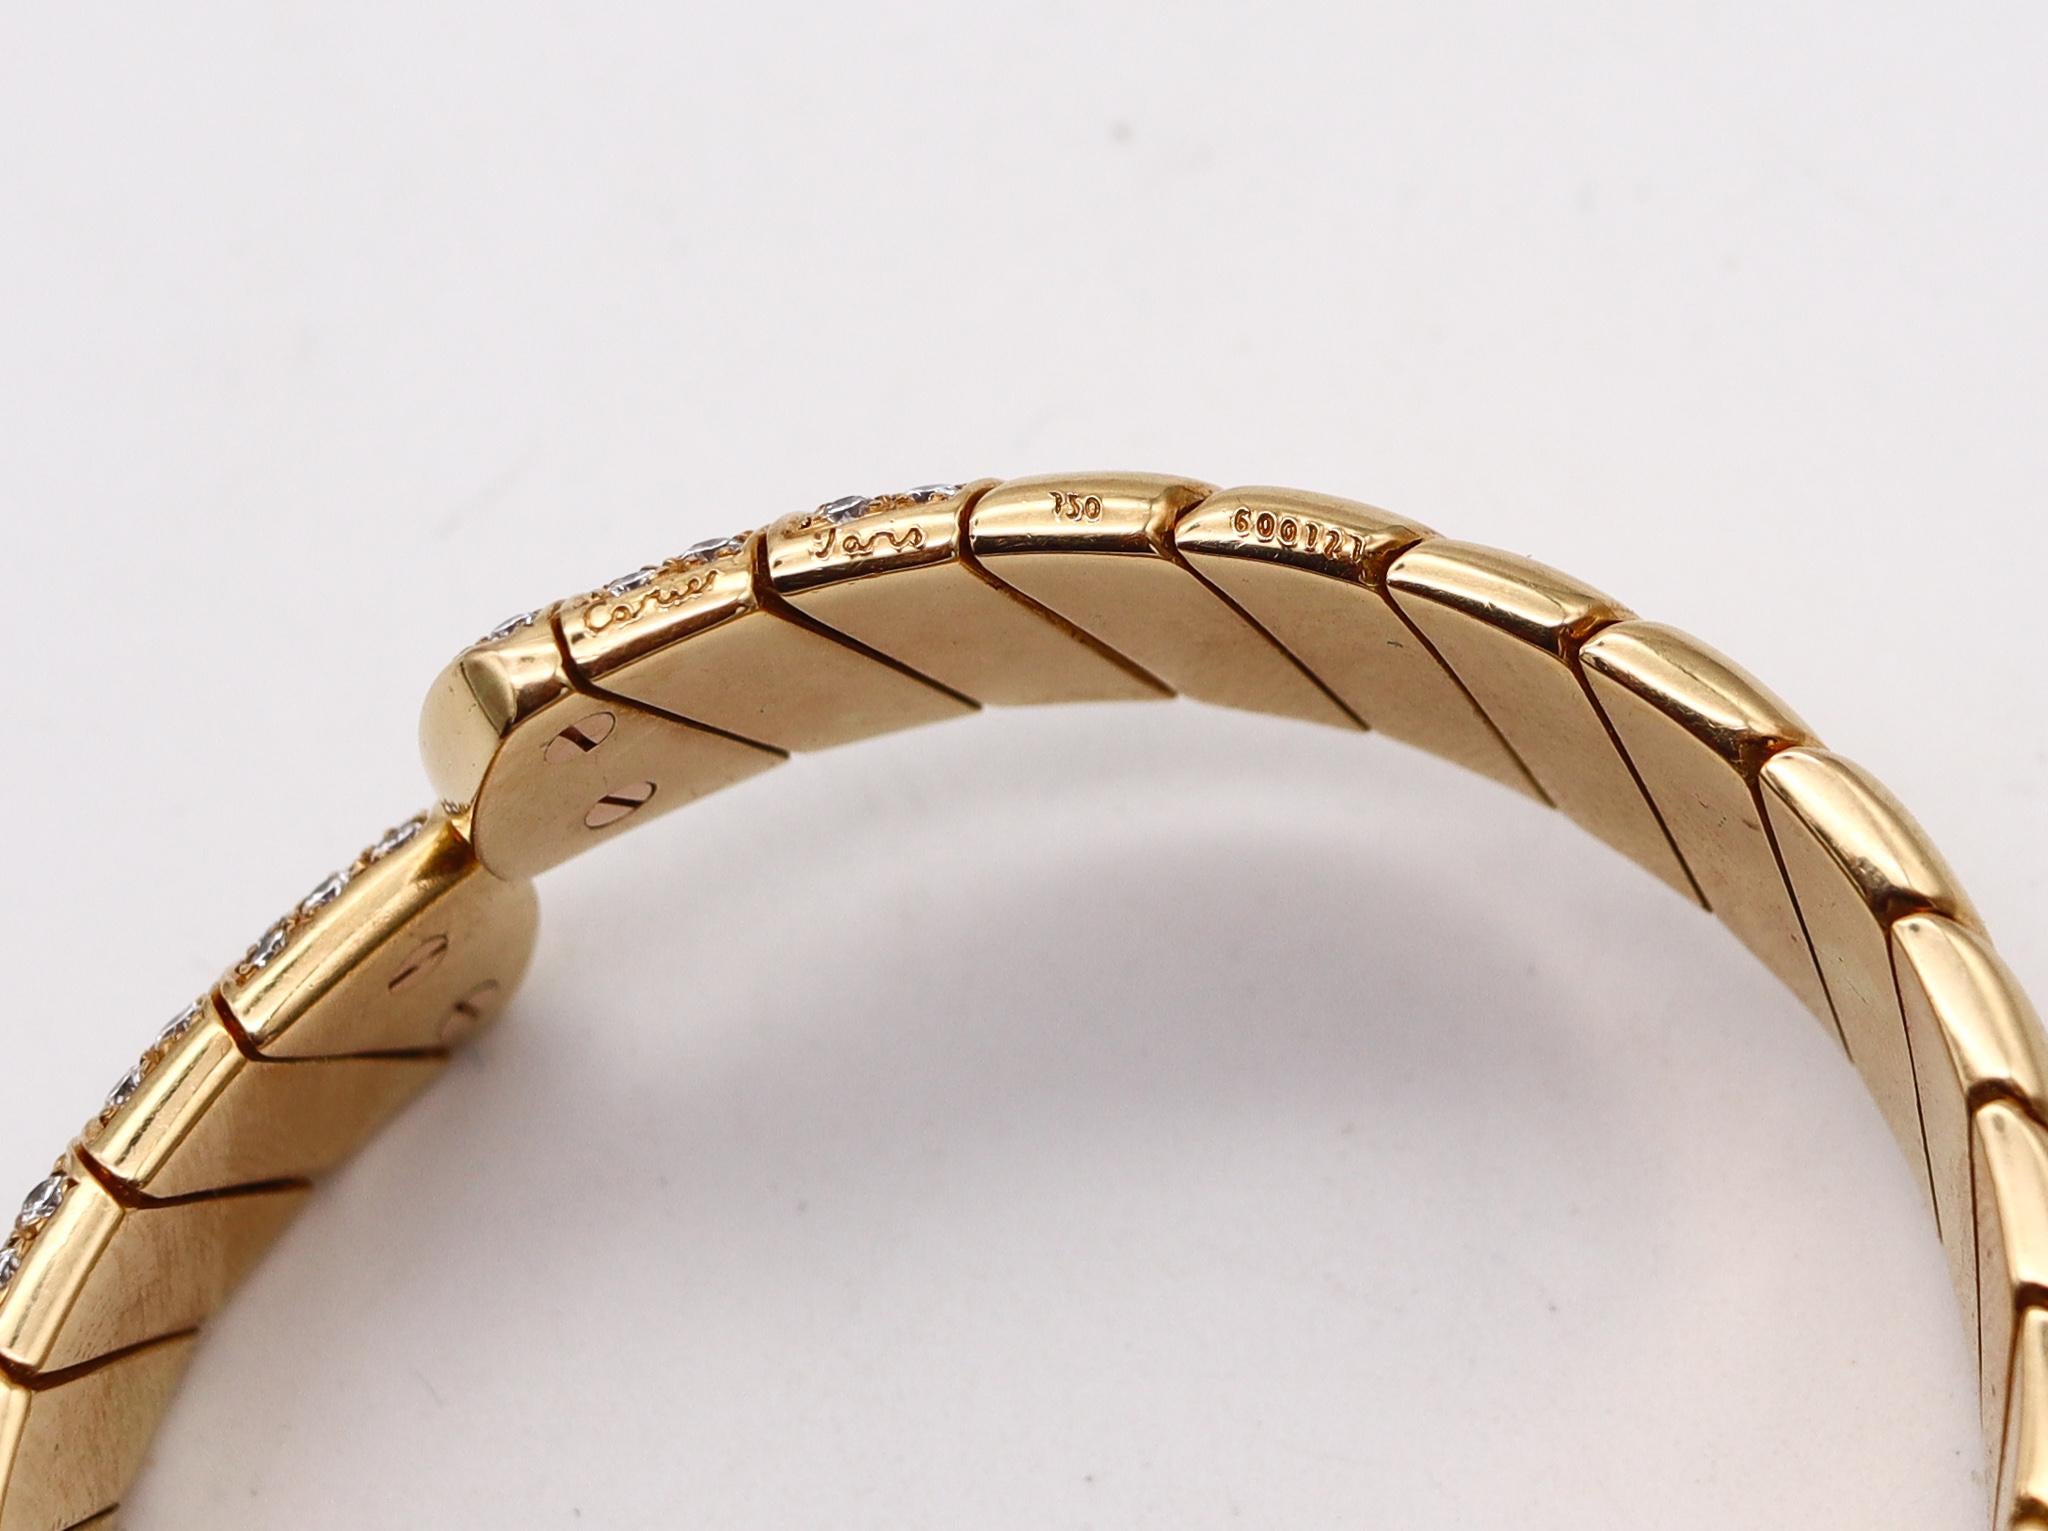 Brilliant Cut Cartier Paris Vintage Cuff Bracelet 18kt Yellow Gold with 3.80ctw in Diamonds